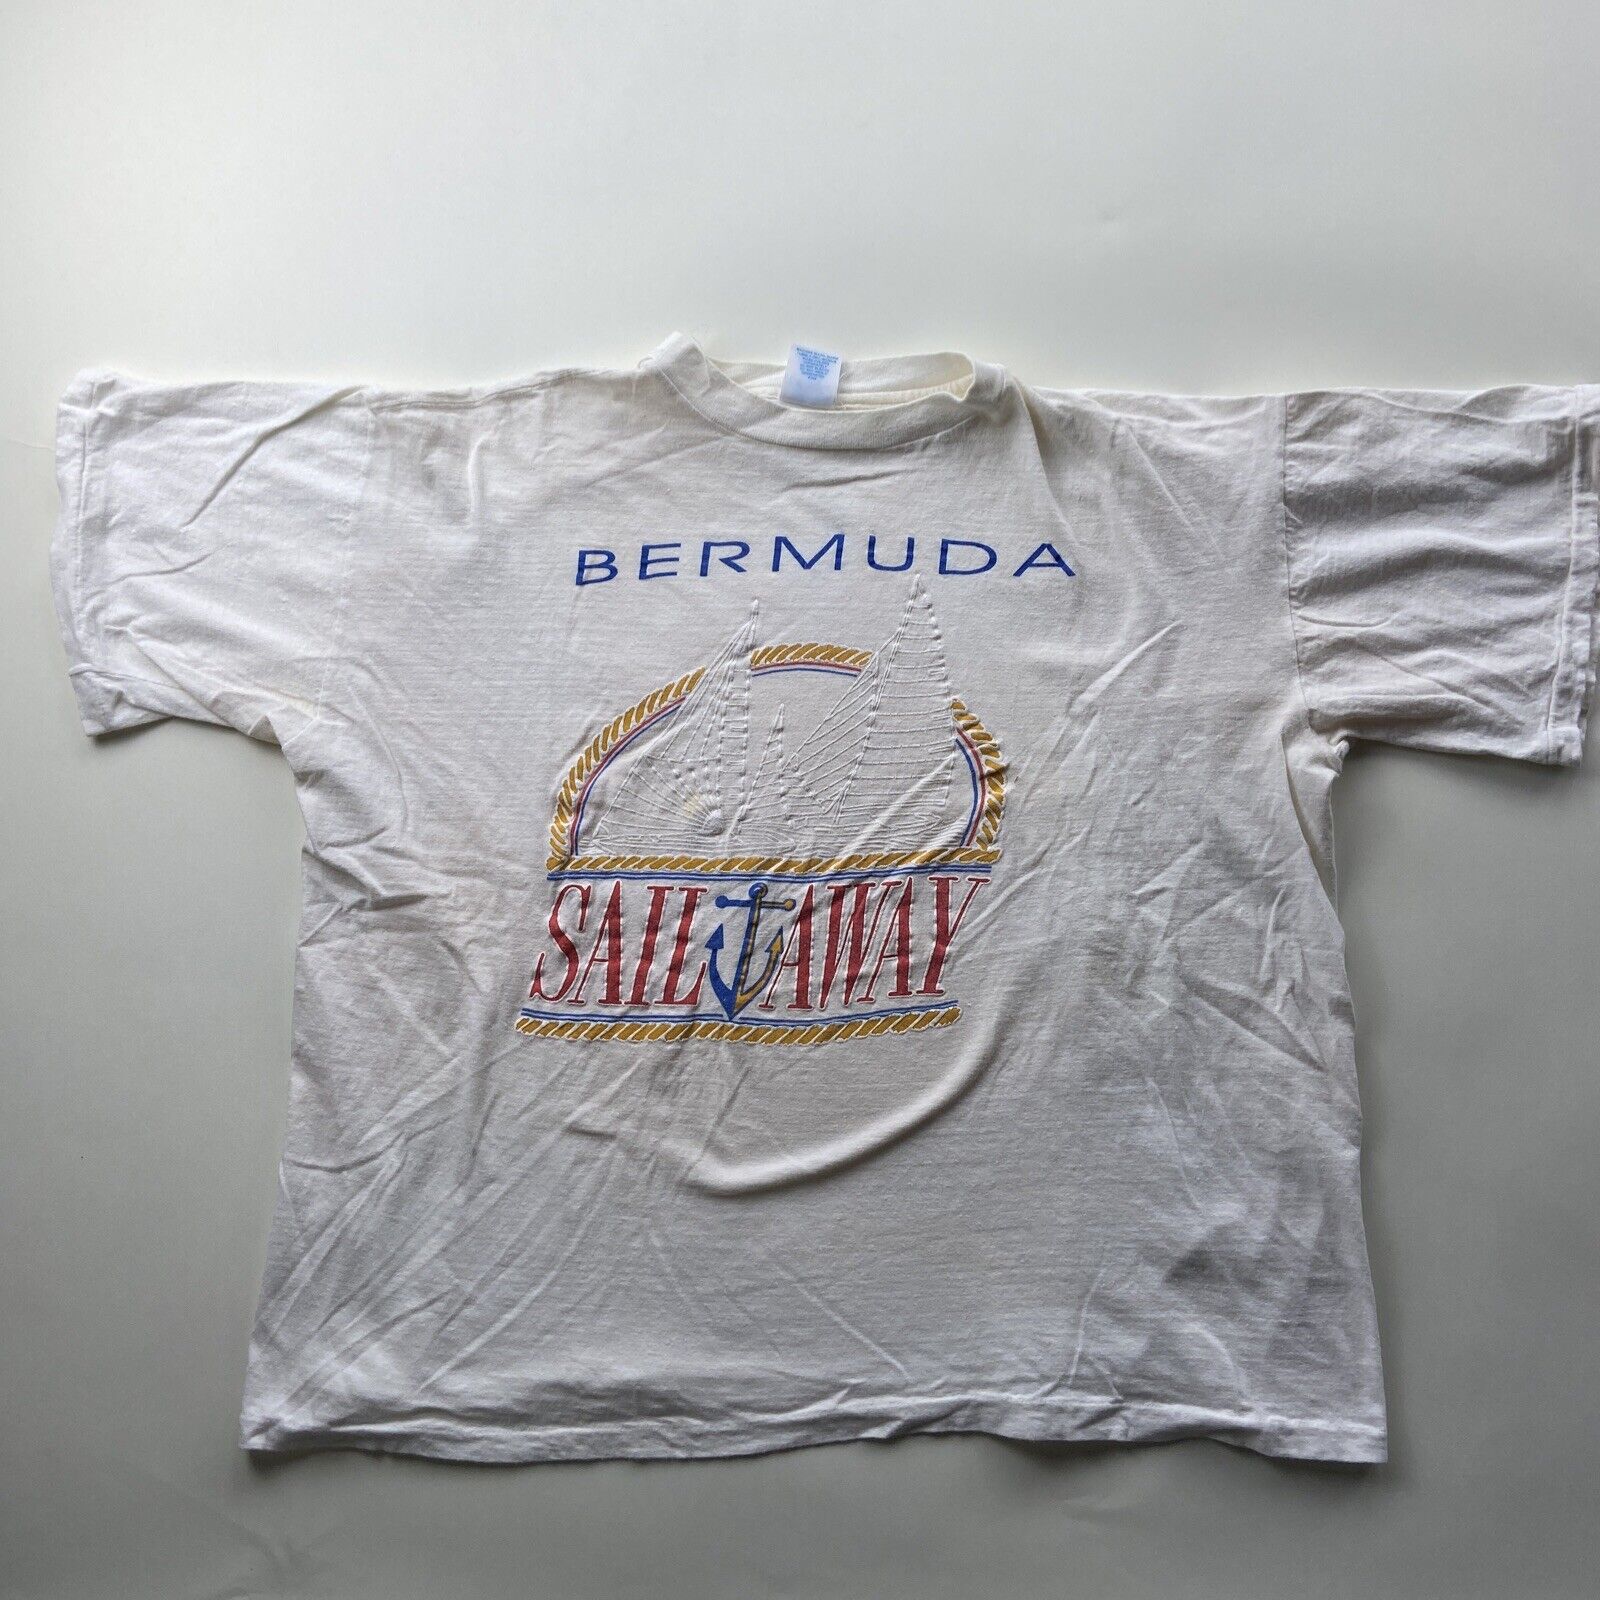 Vintage Bermuda Sail Away shirt XL - image 1